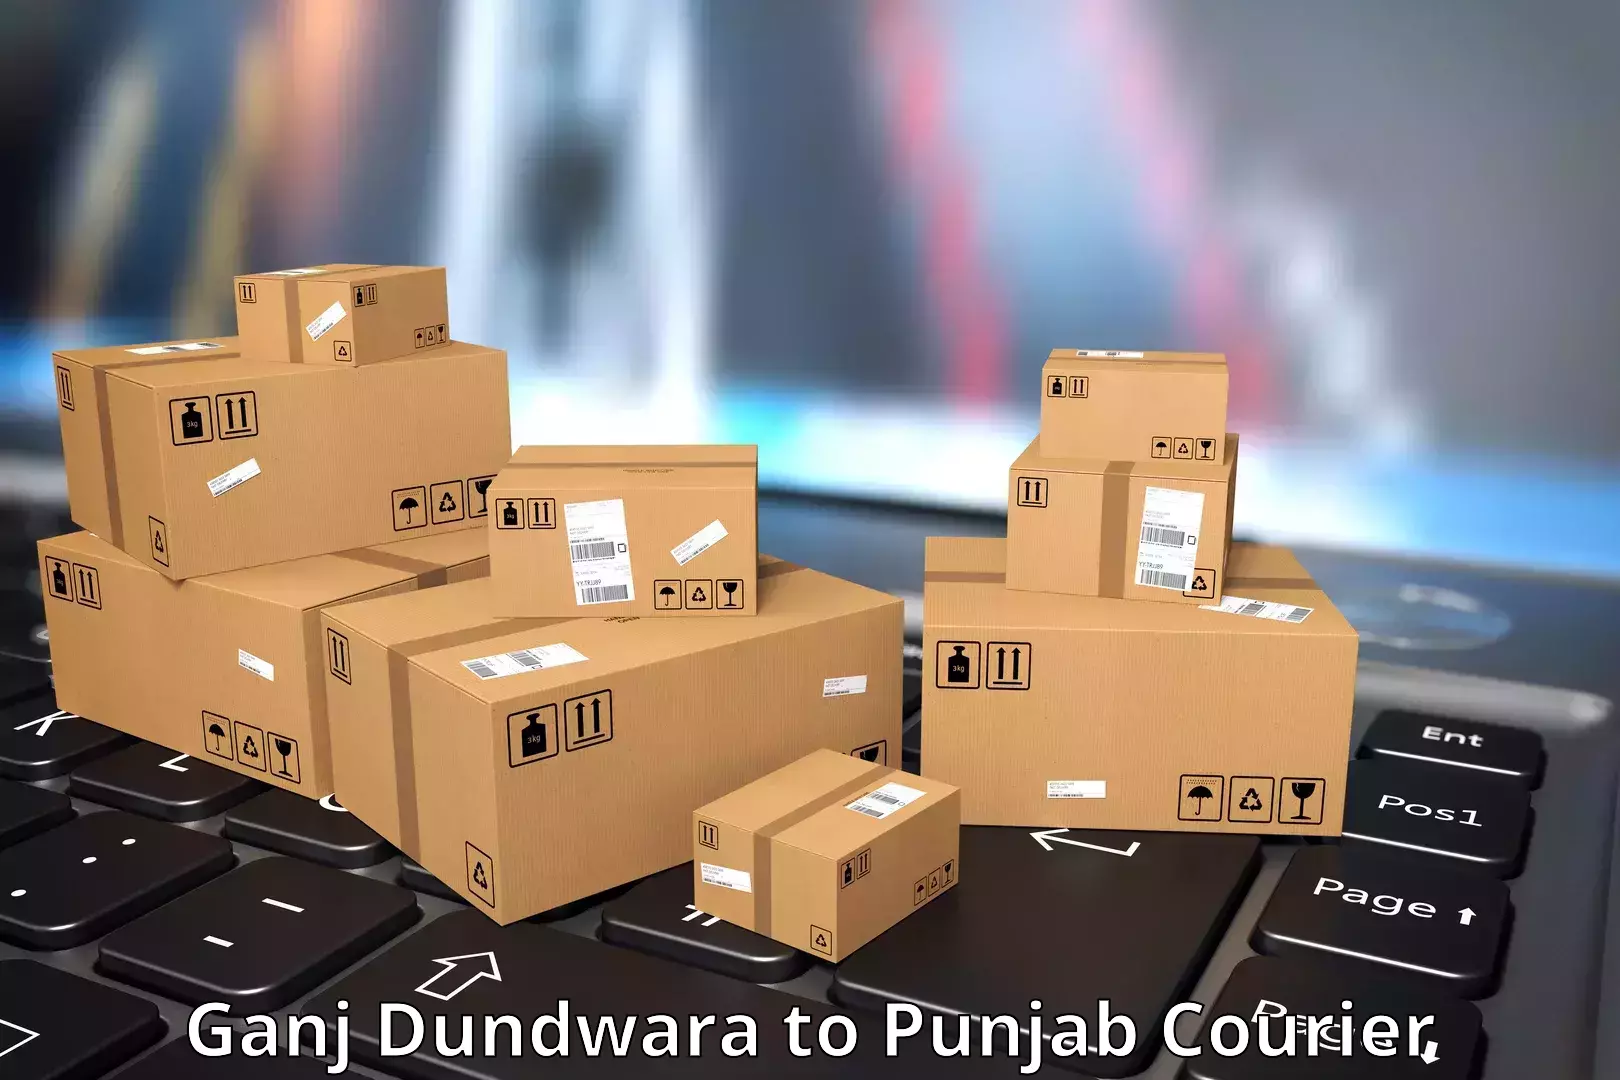 Express package transport Ganj Dundwara to Punjab